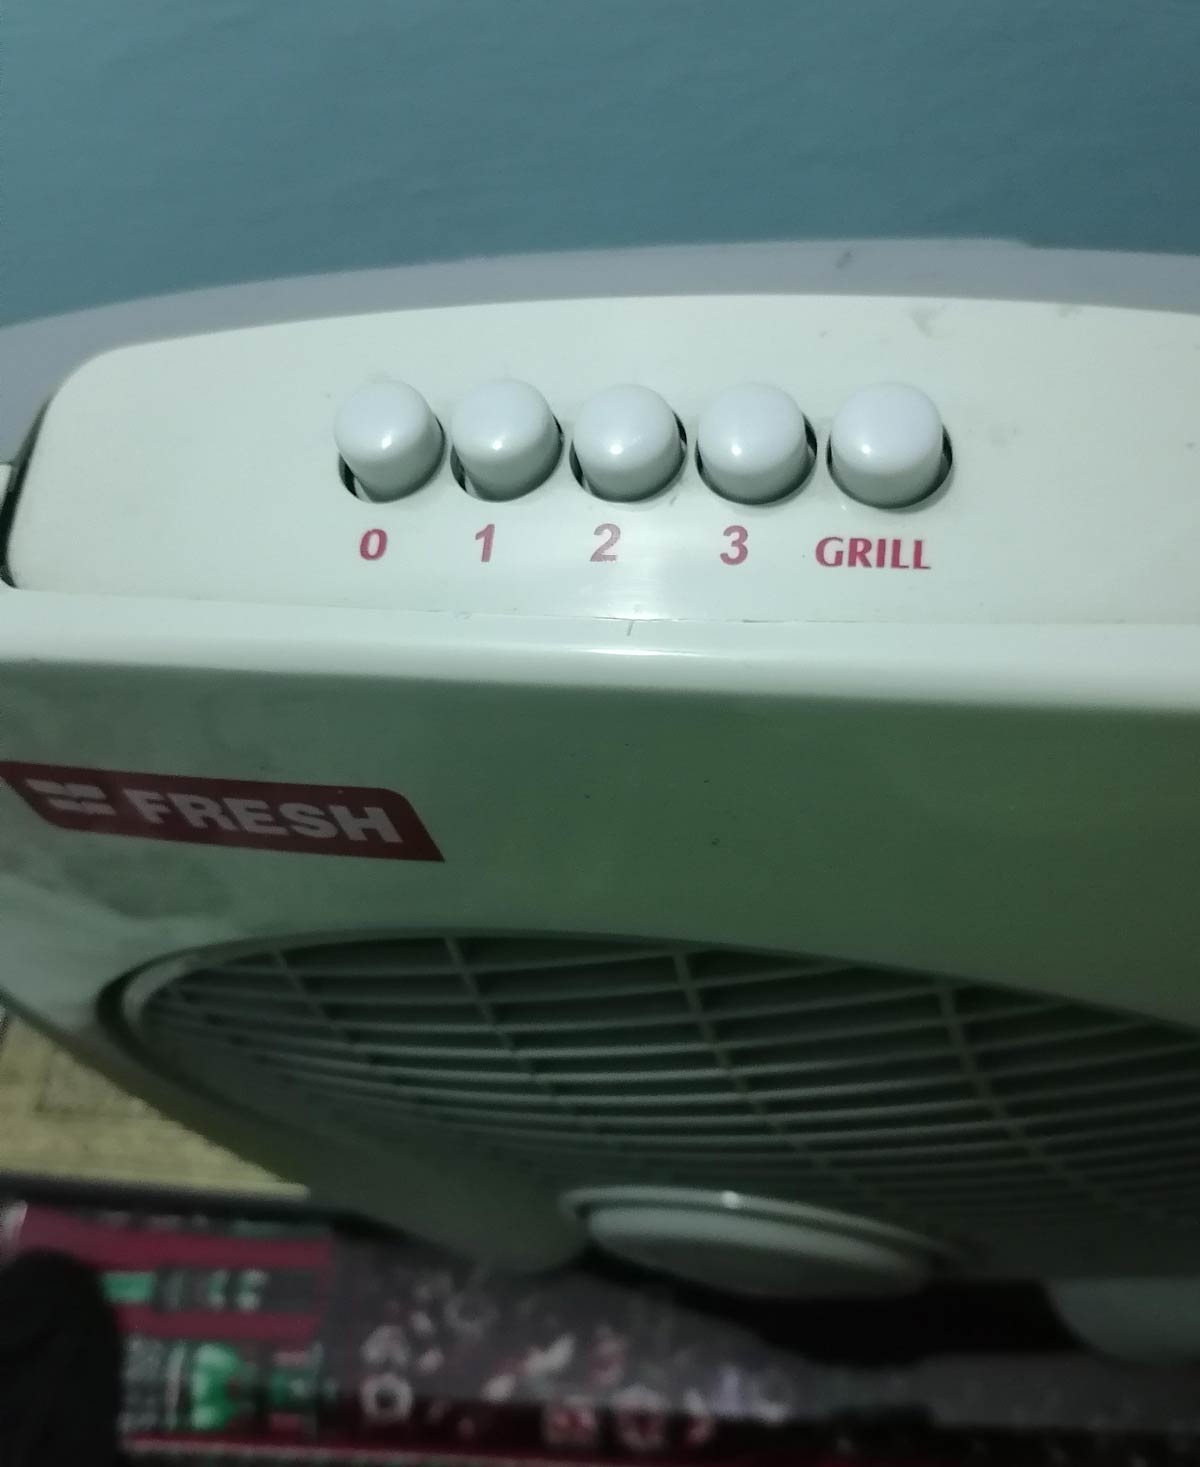 My grandpa's fan has a "Grill" button